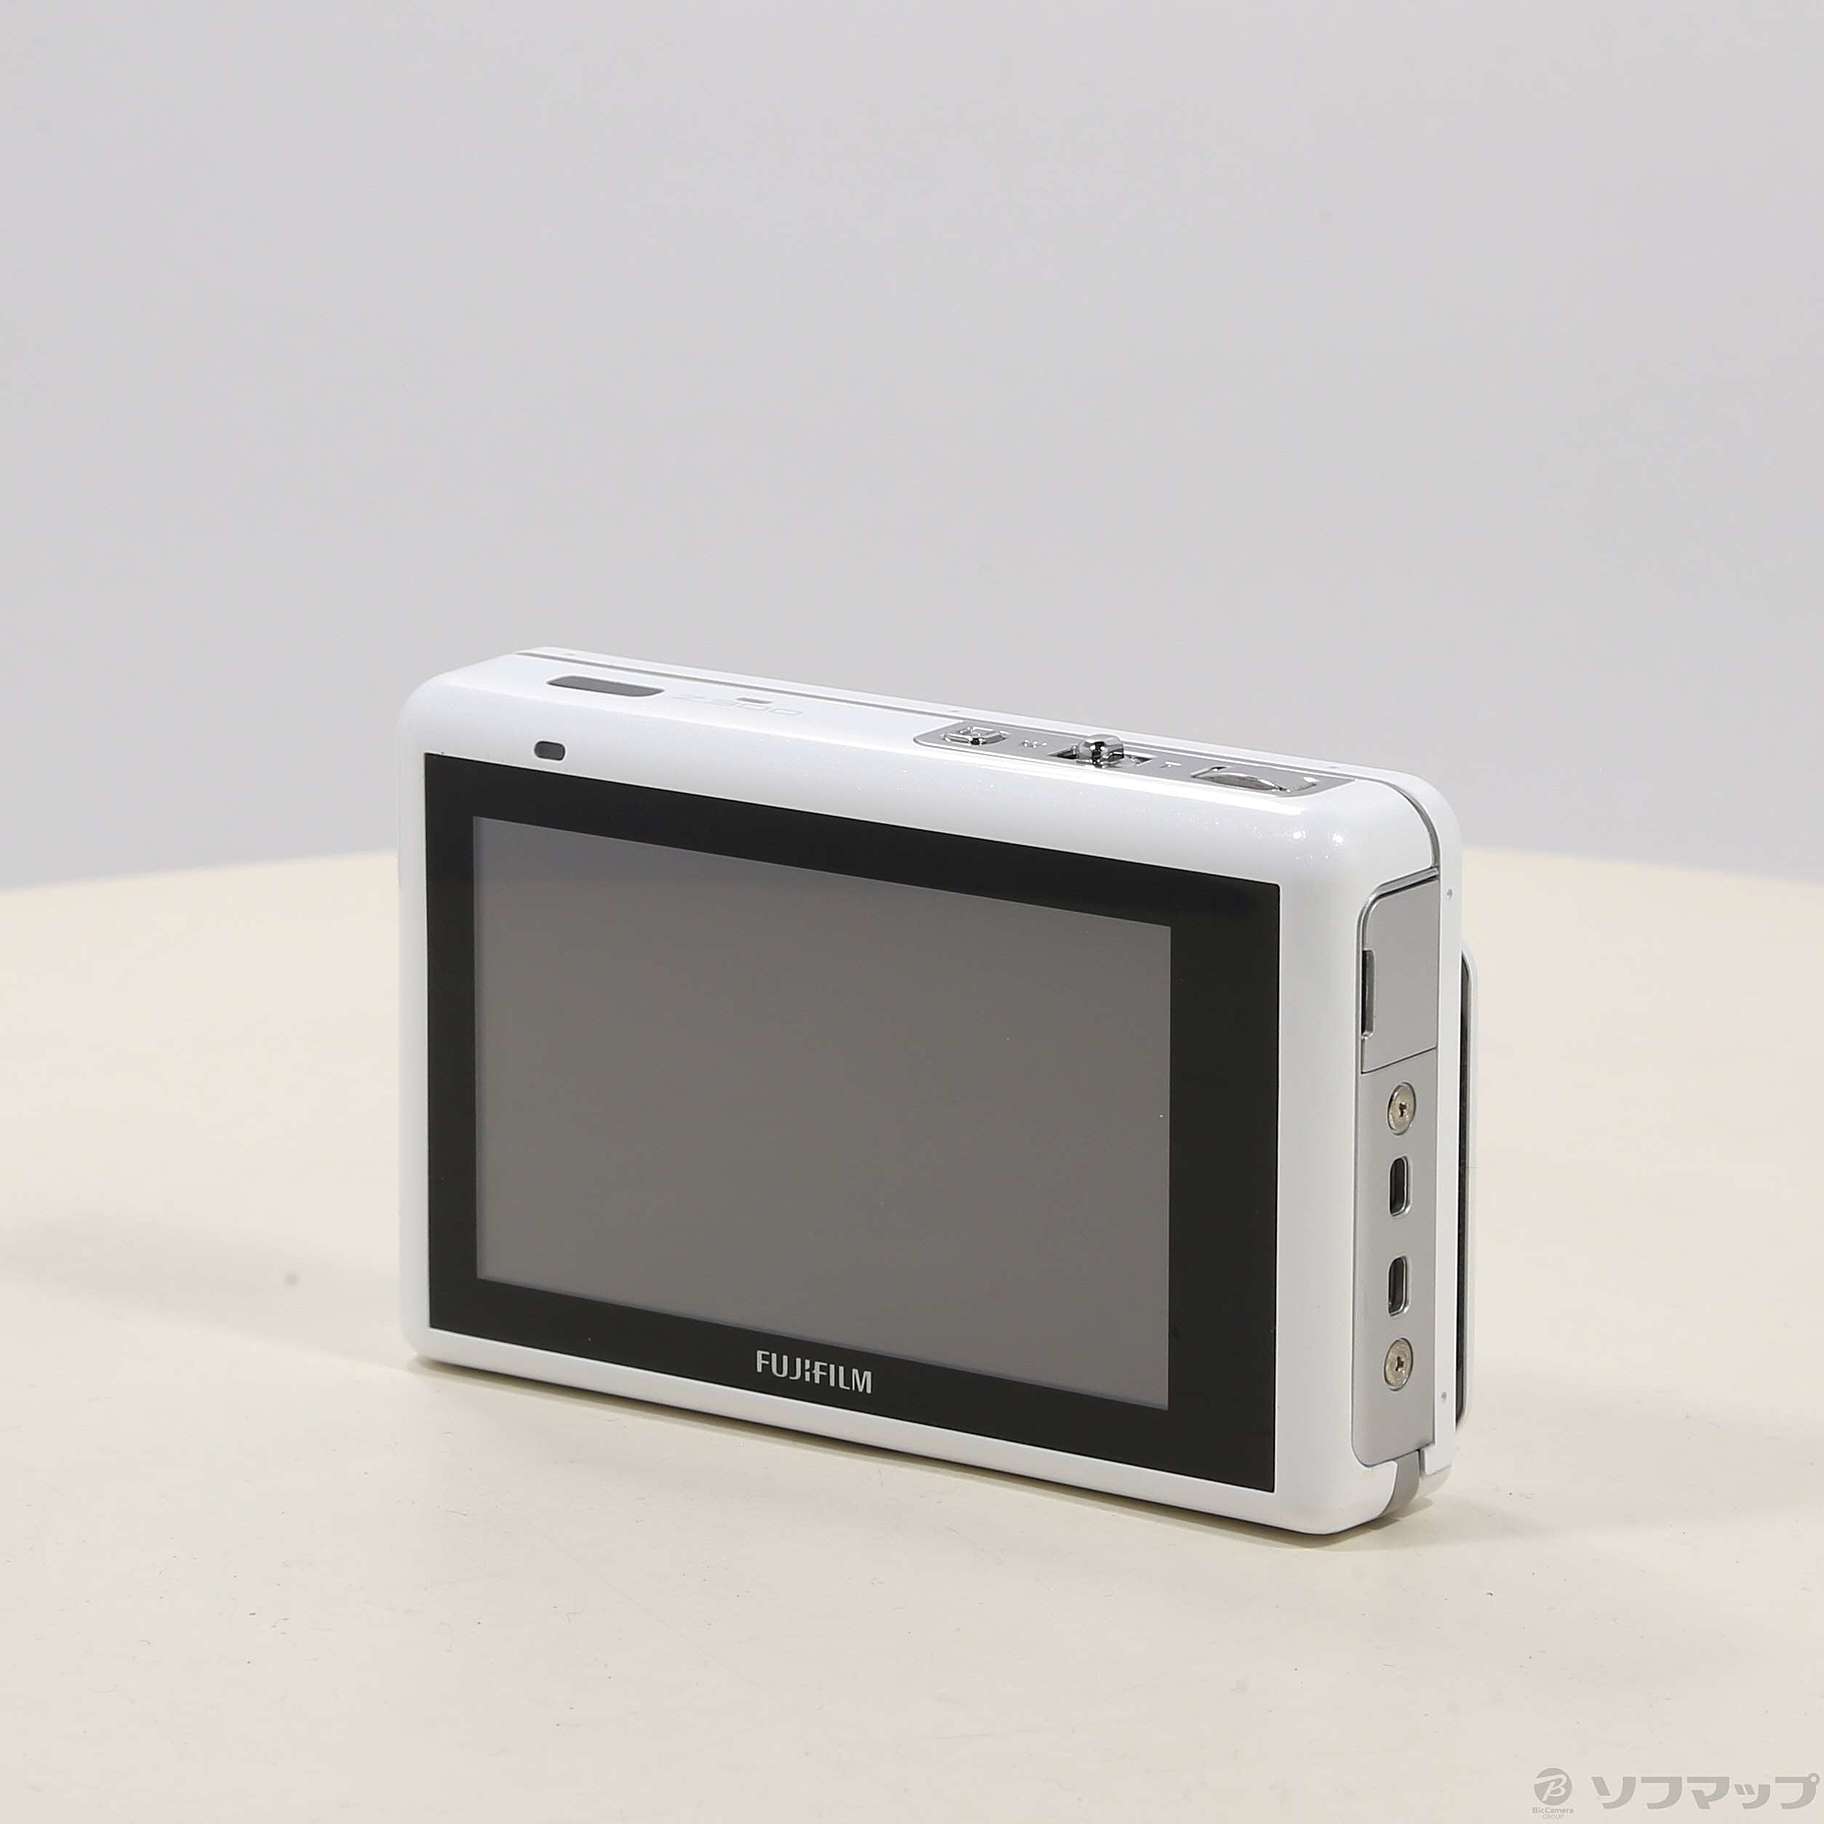 富士フィルム デジカメ FINEPIX Z300 ホワイト - デジタルカメラ